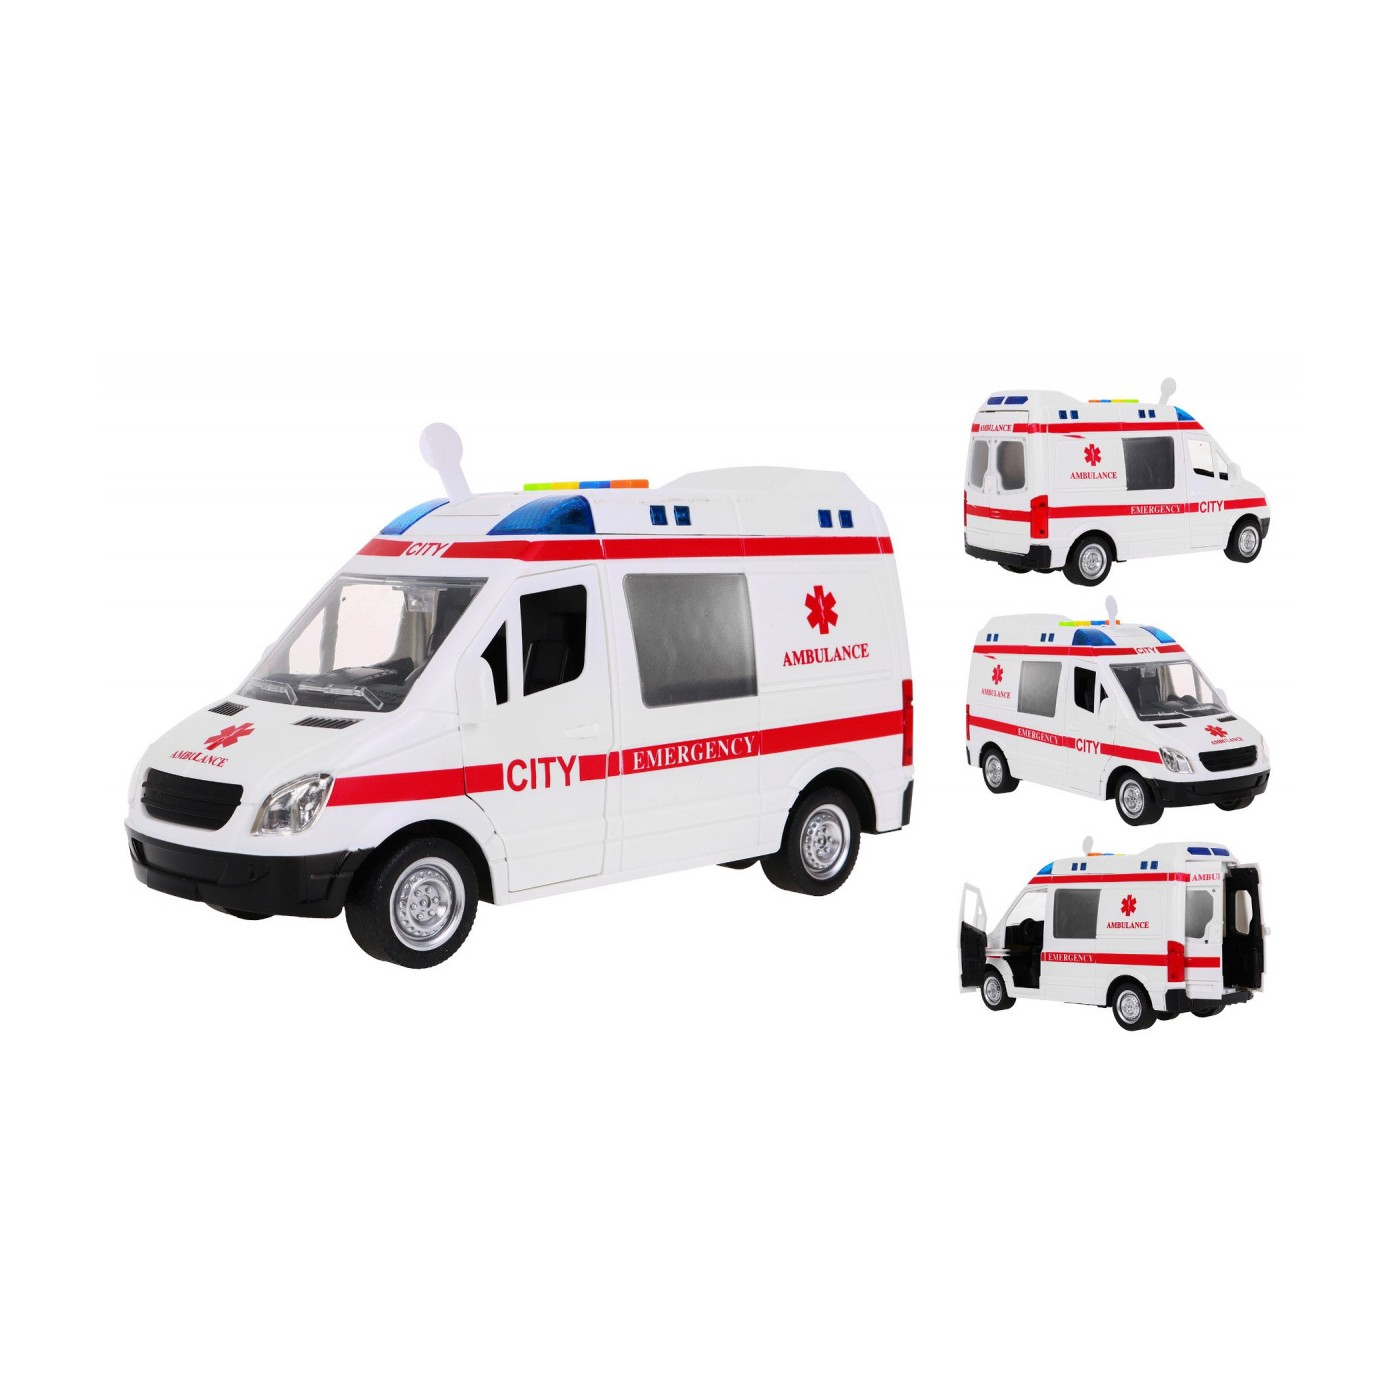 Ambulance 1 16 Ambulance Lights Sounds